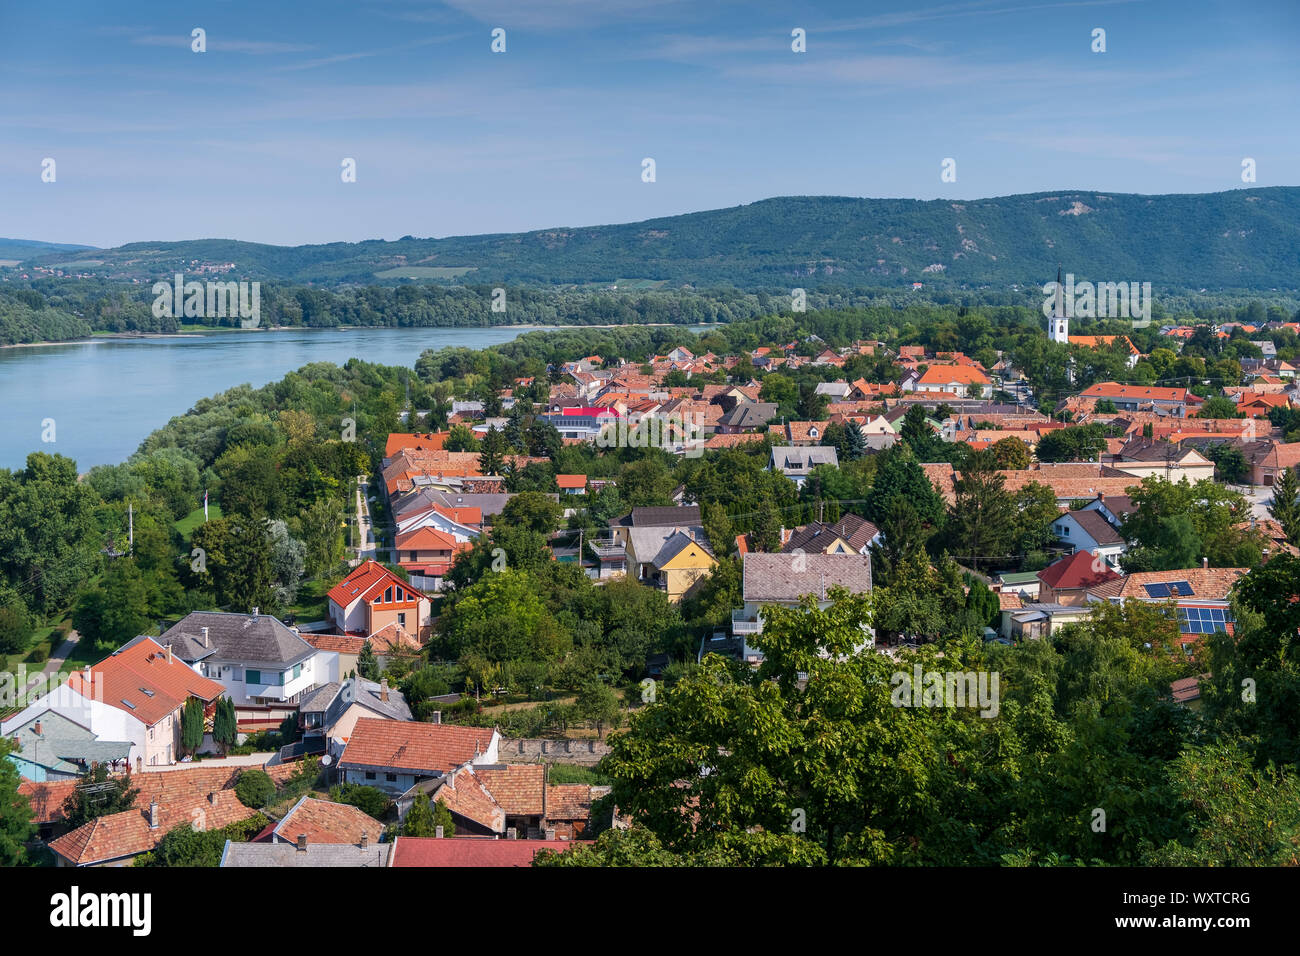 ESZTERGOM, UNGHERIA - 20 agosto 2019: Vizivaros è un quartiere di Esztergom sulla riva destra del Danubio, sotto il castello reale e la chiesa di San Ada Foto Stock